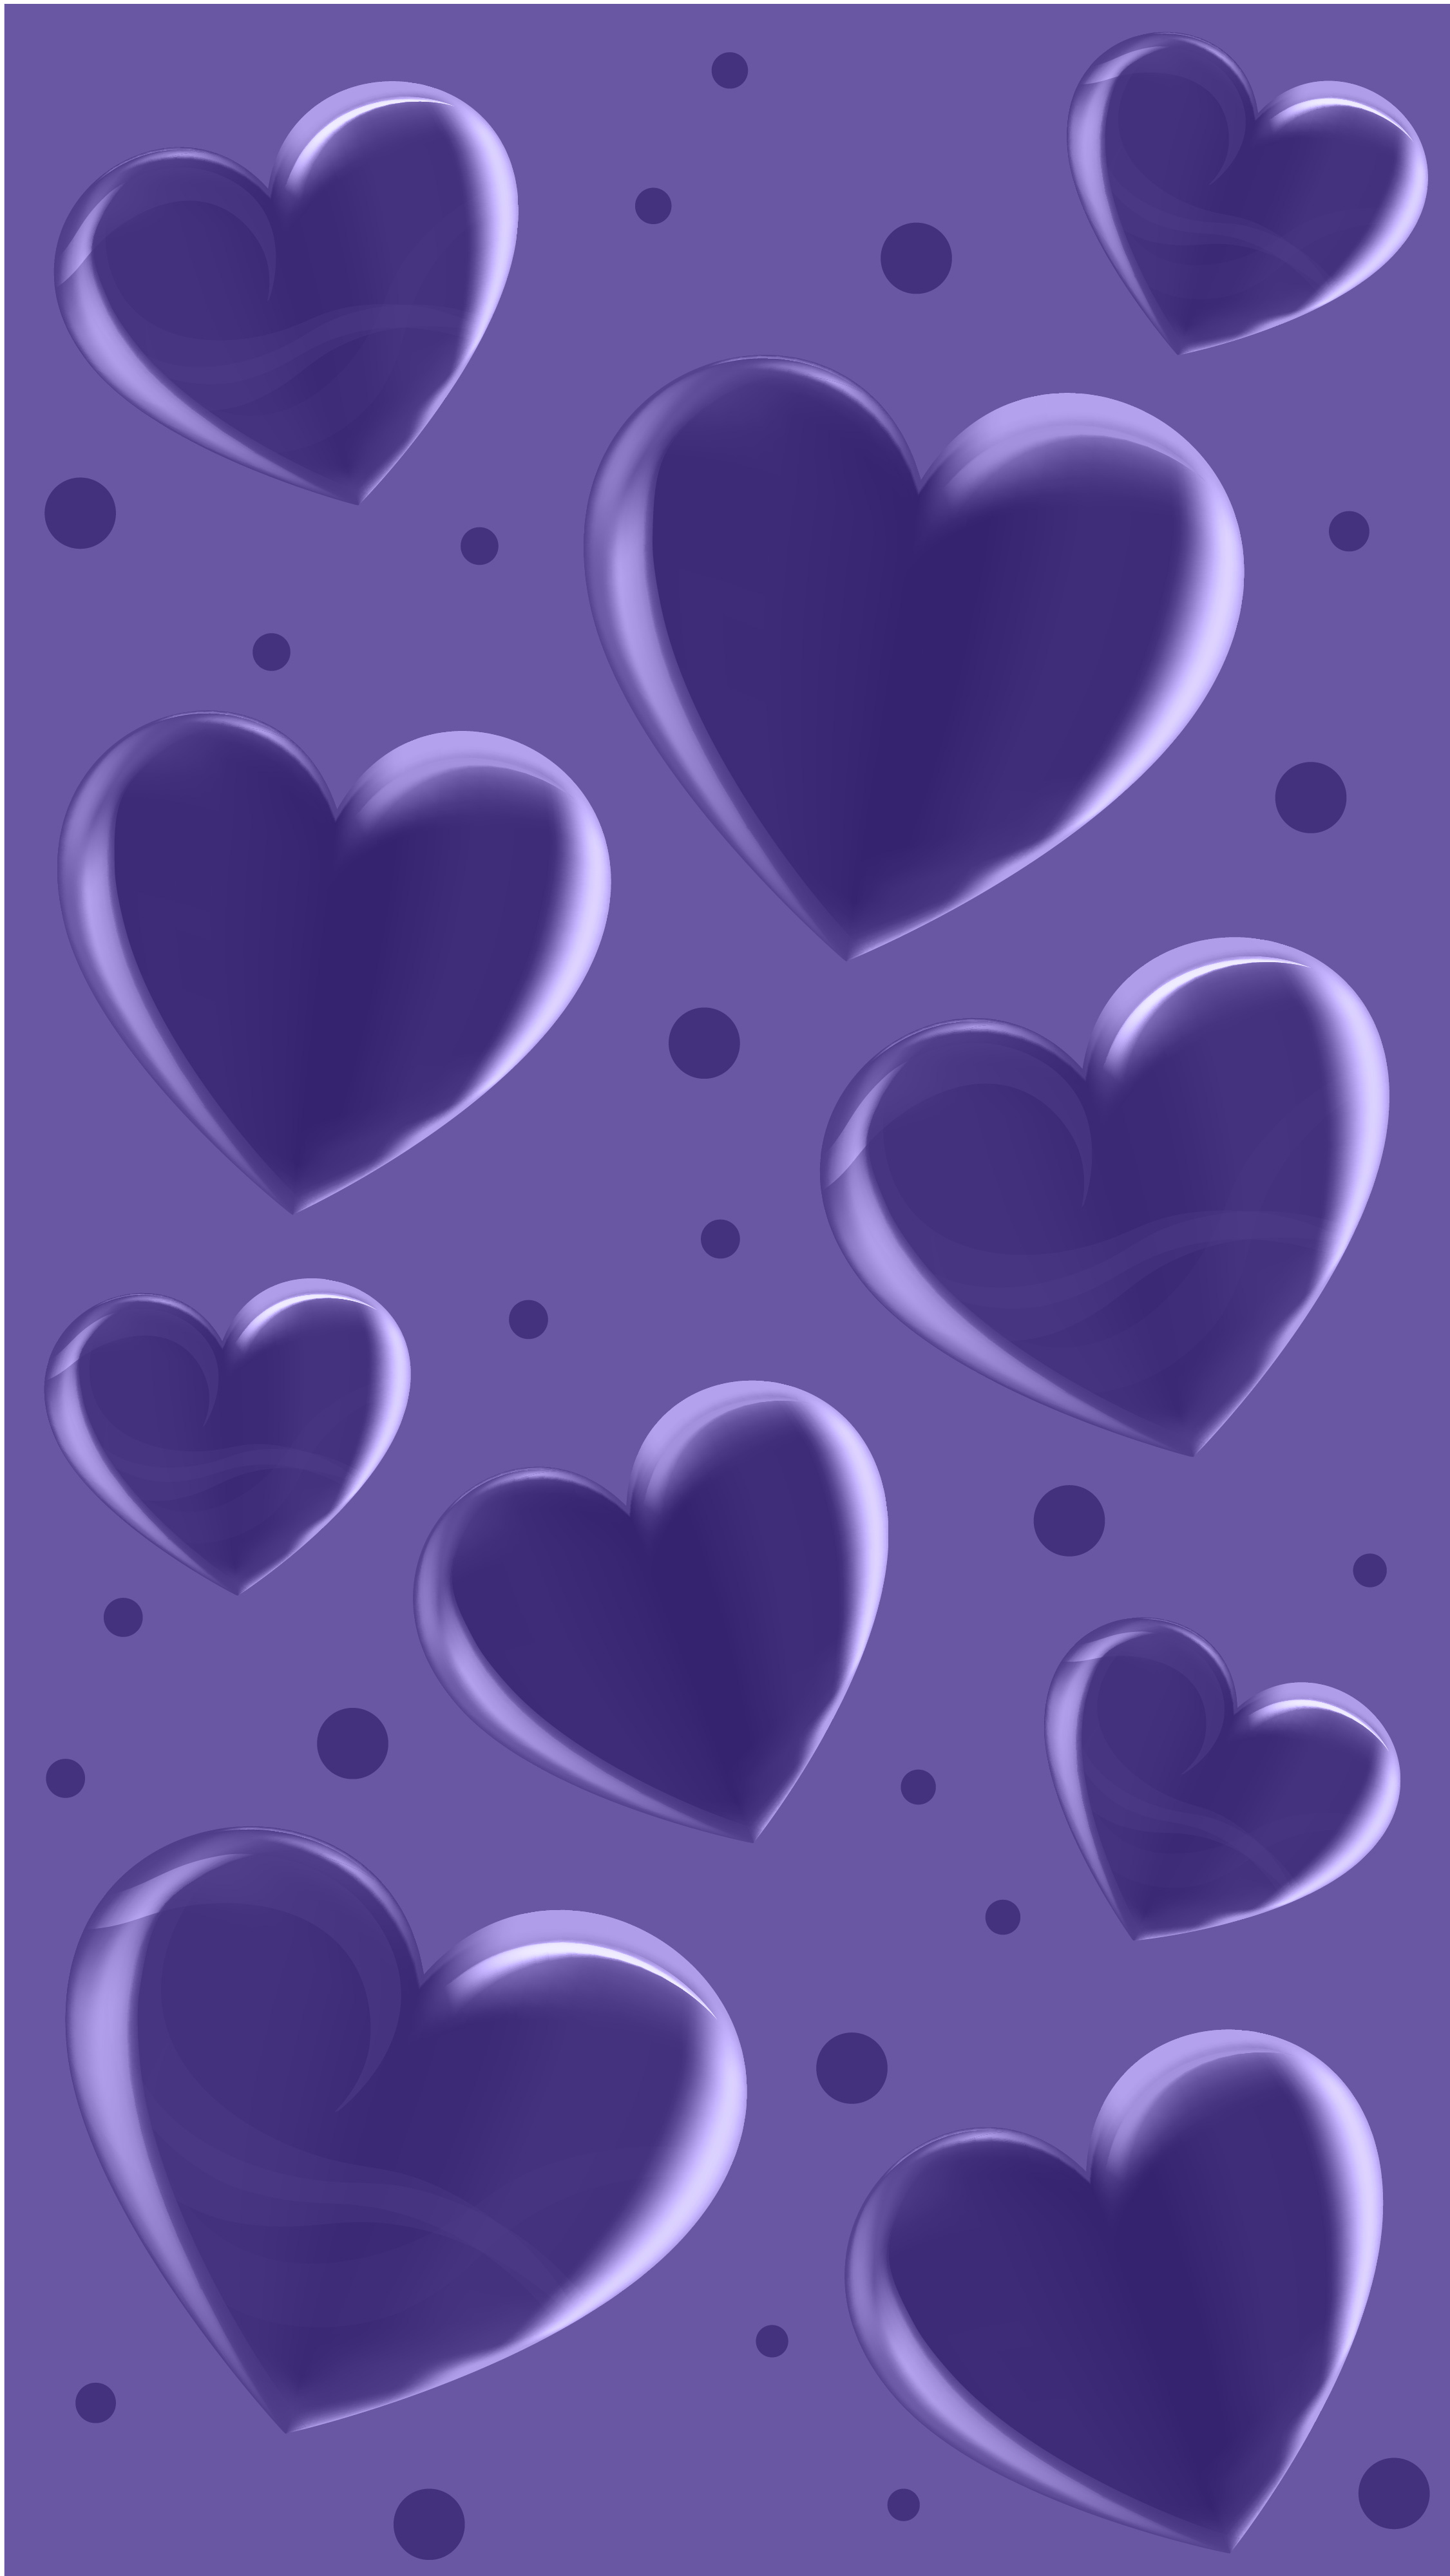 FREE Light Purple Floral Background in EPS, Illustrator, JPG, SVG ...